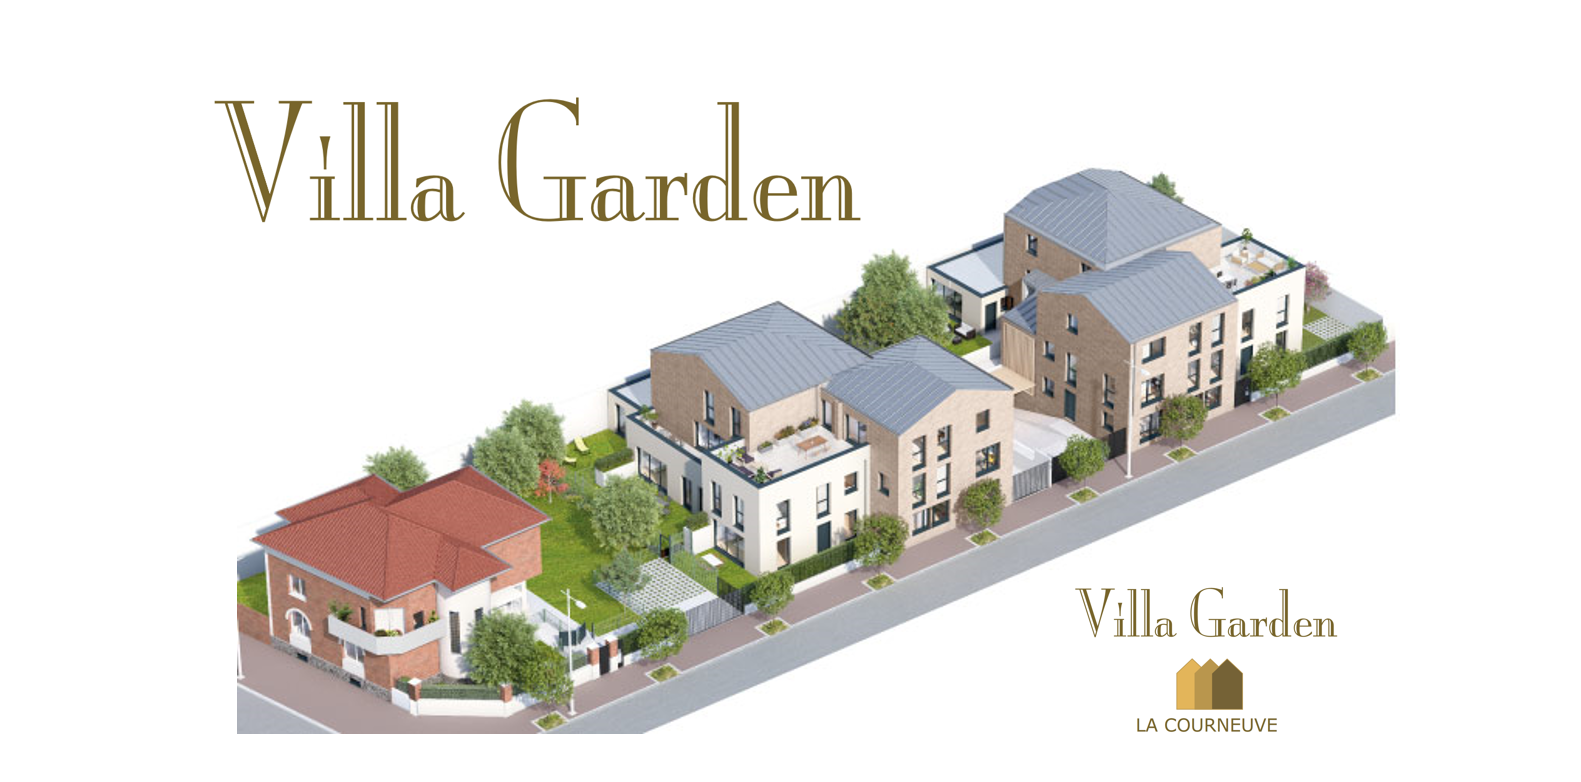 Illustration construction immobilier villa garden